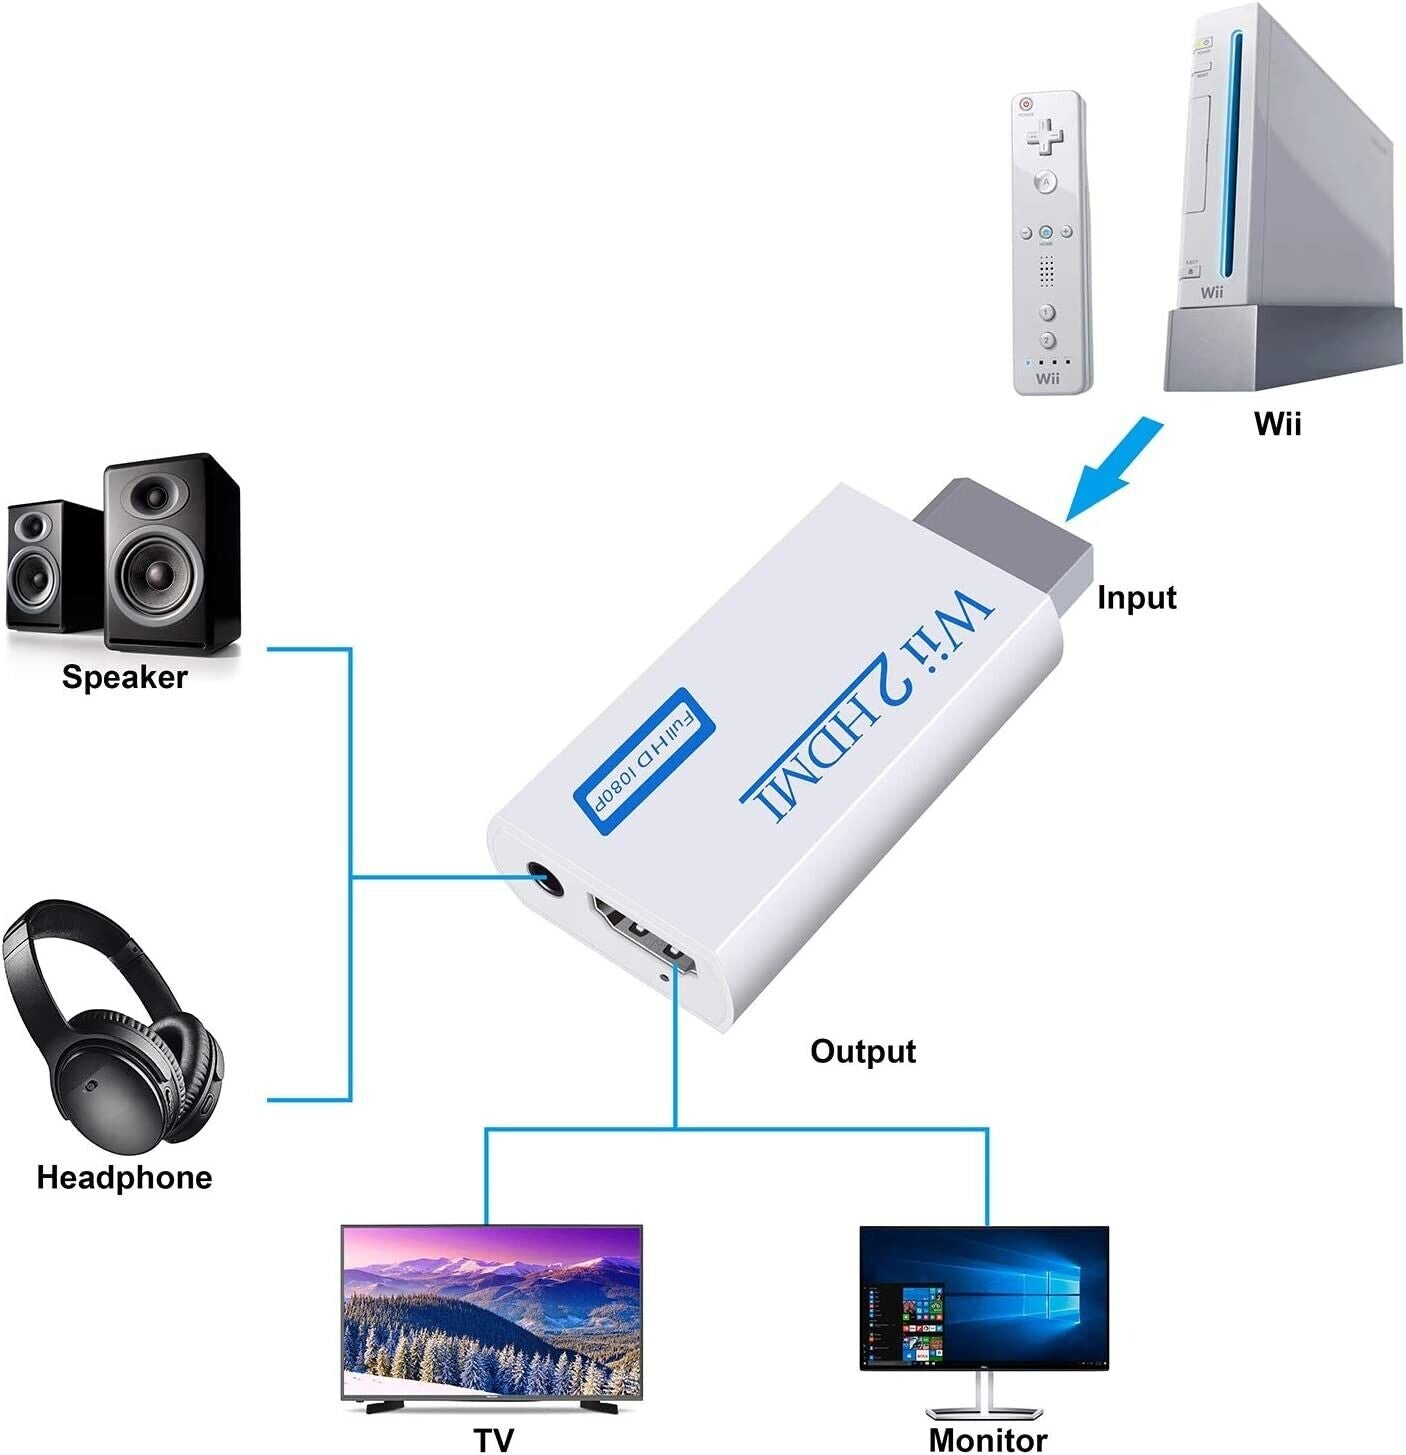 Til Nintendo Wii til HDMI Converter Adapter Audio Video Kabel rca ledning